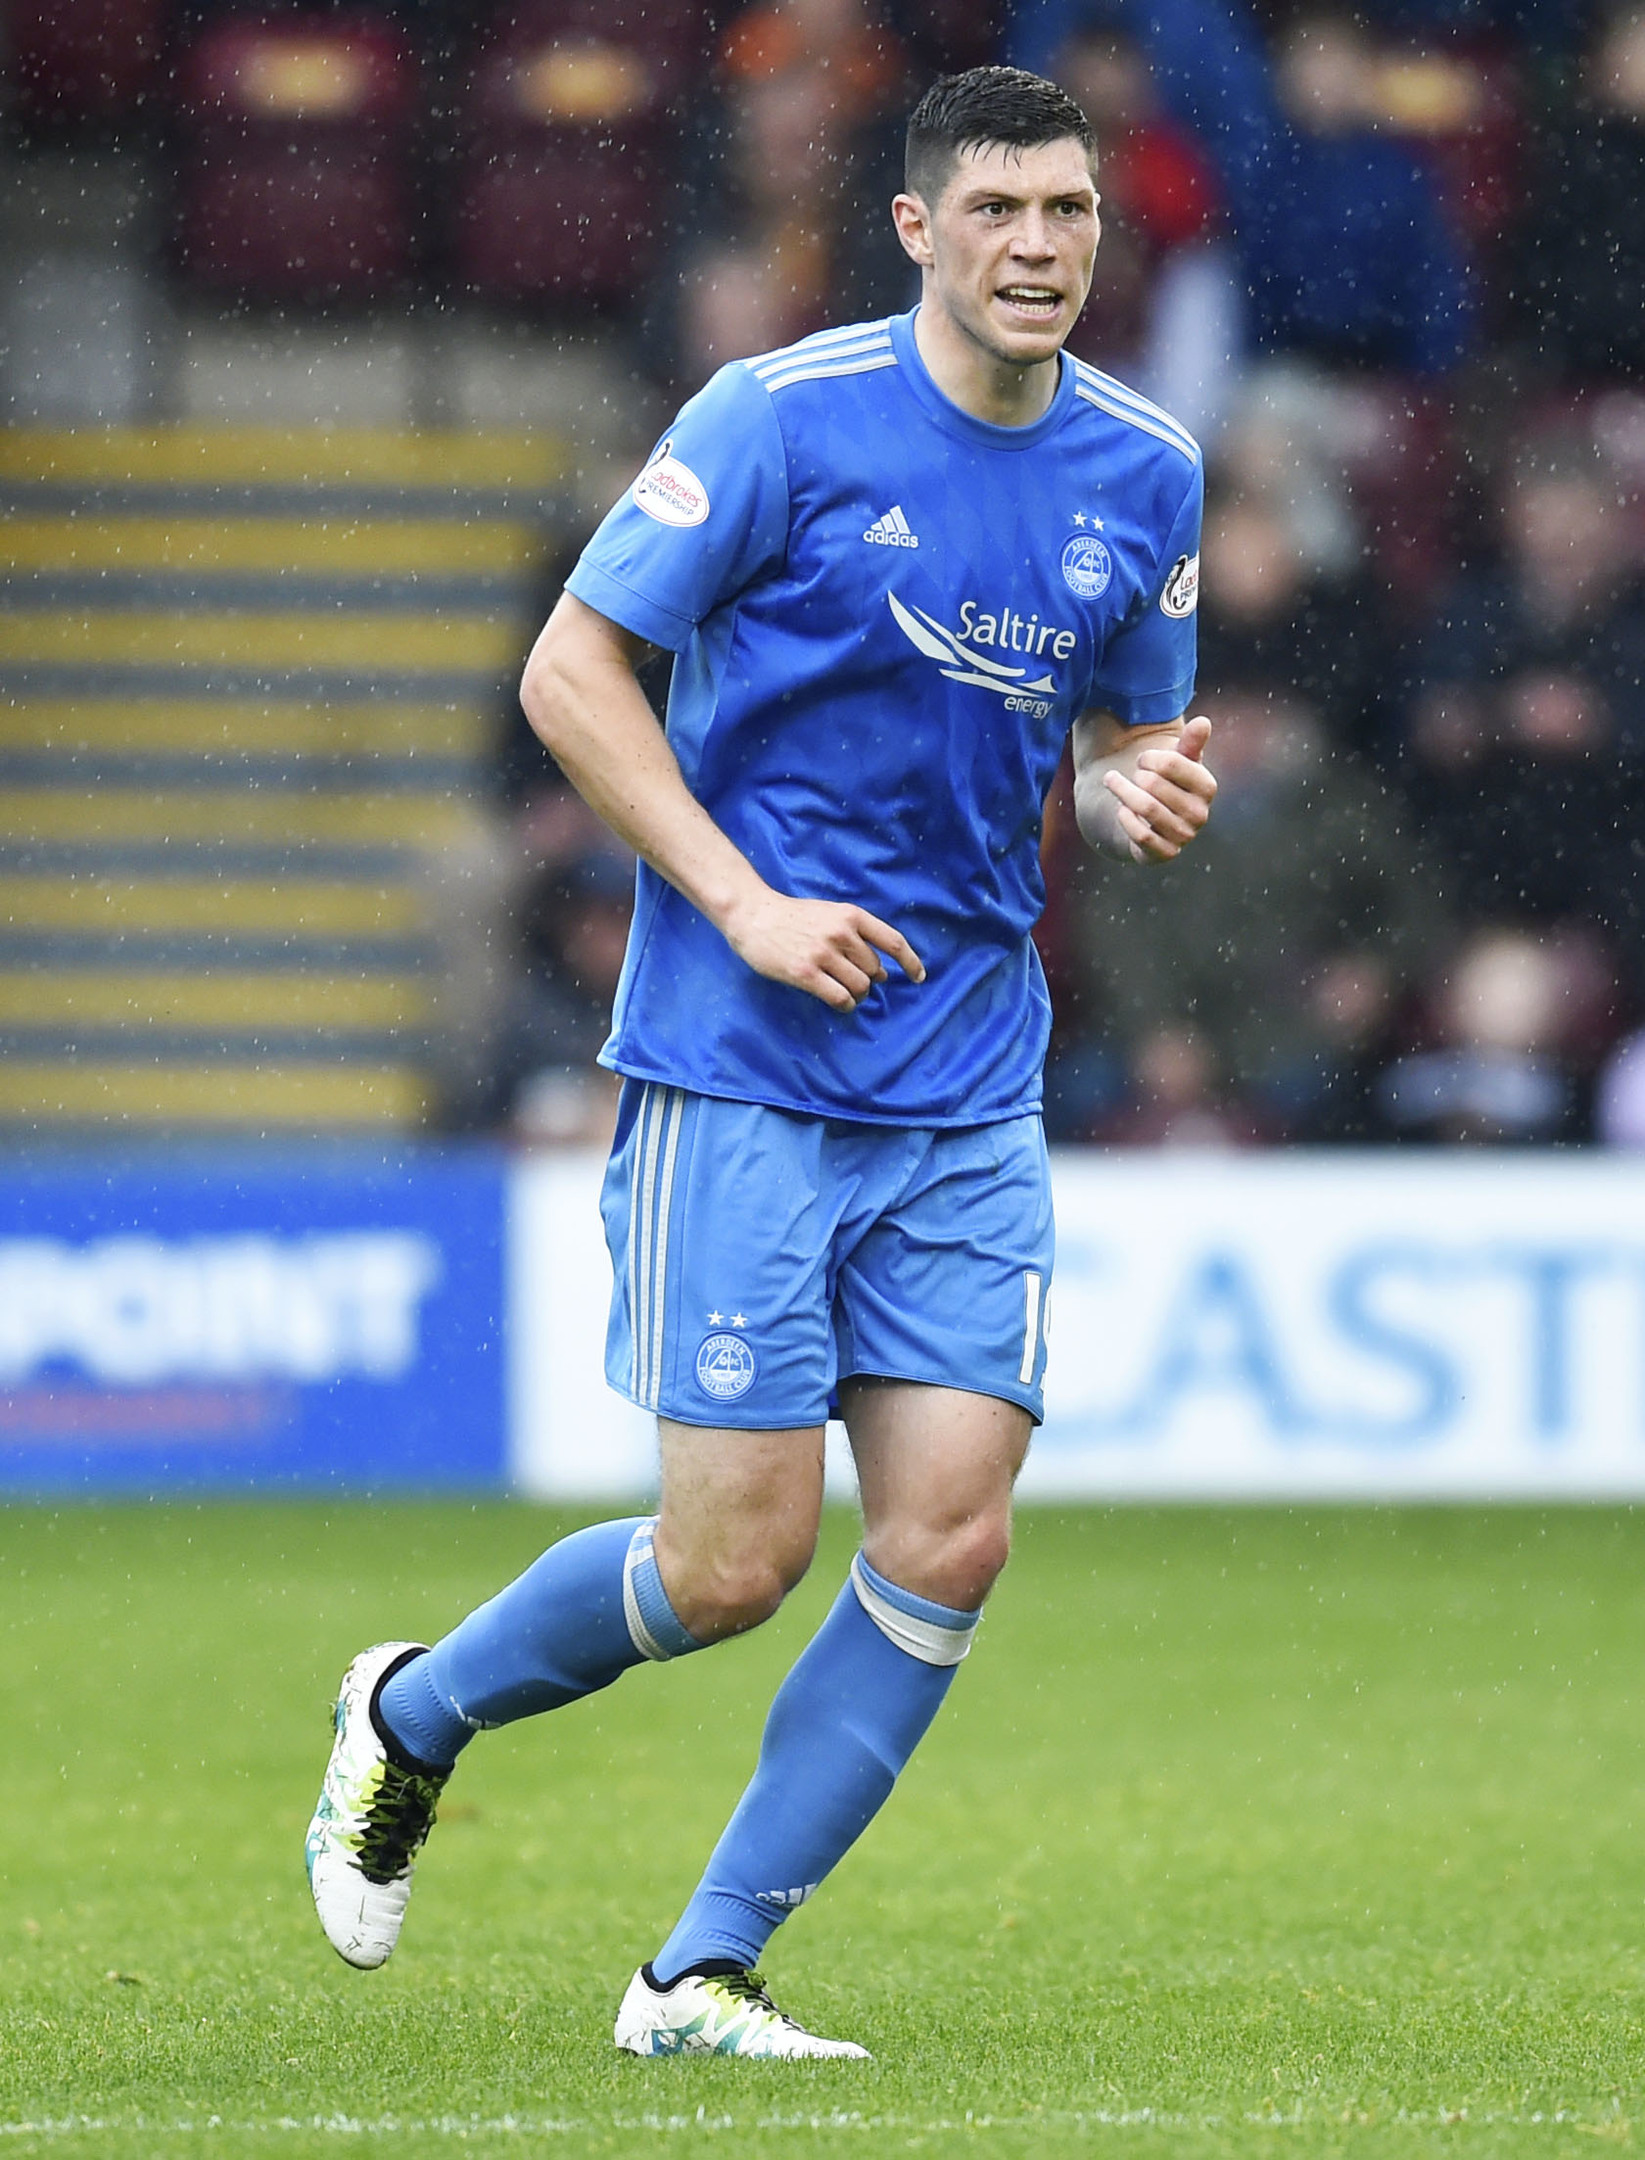 Scott McKenna scored twice for Aberdeen